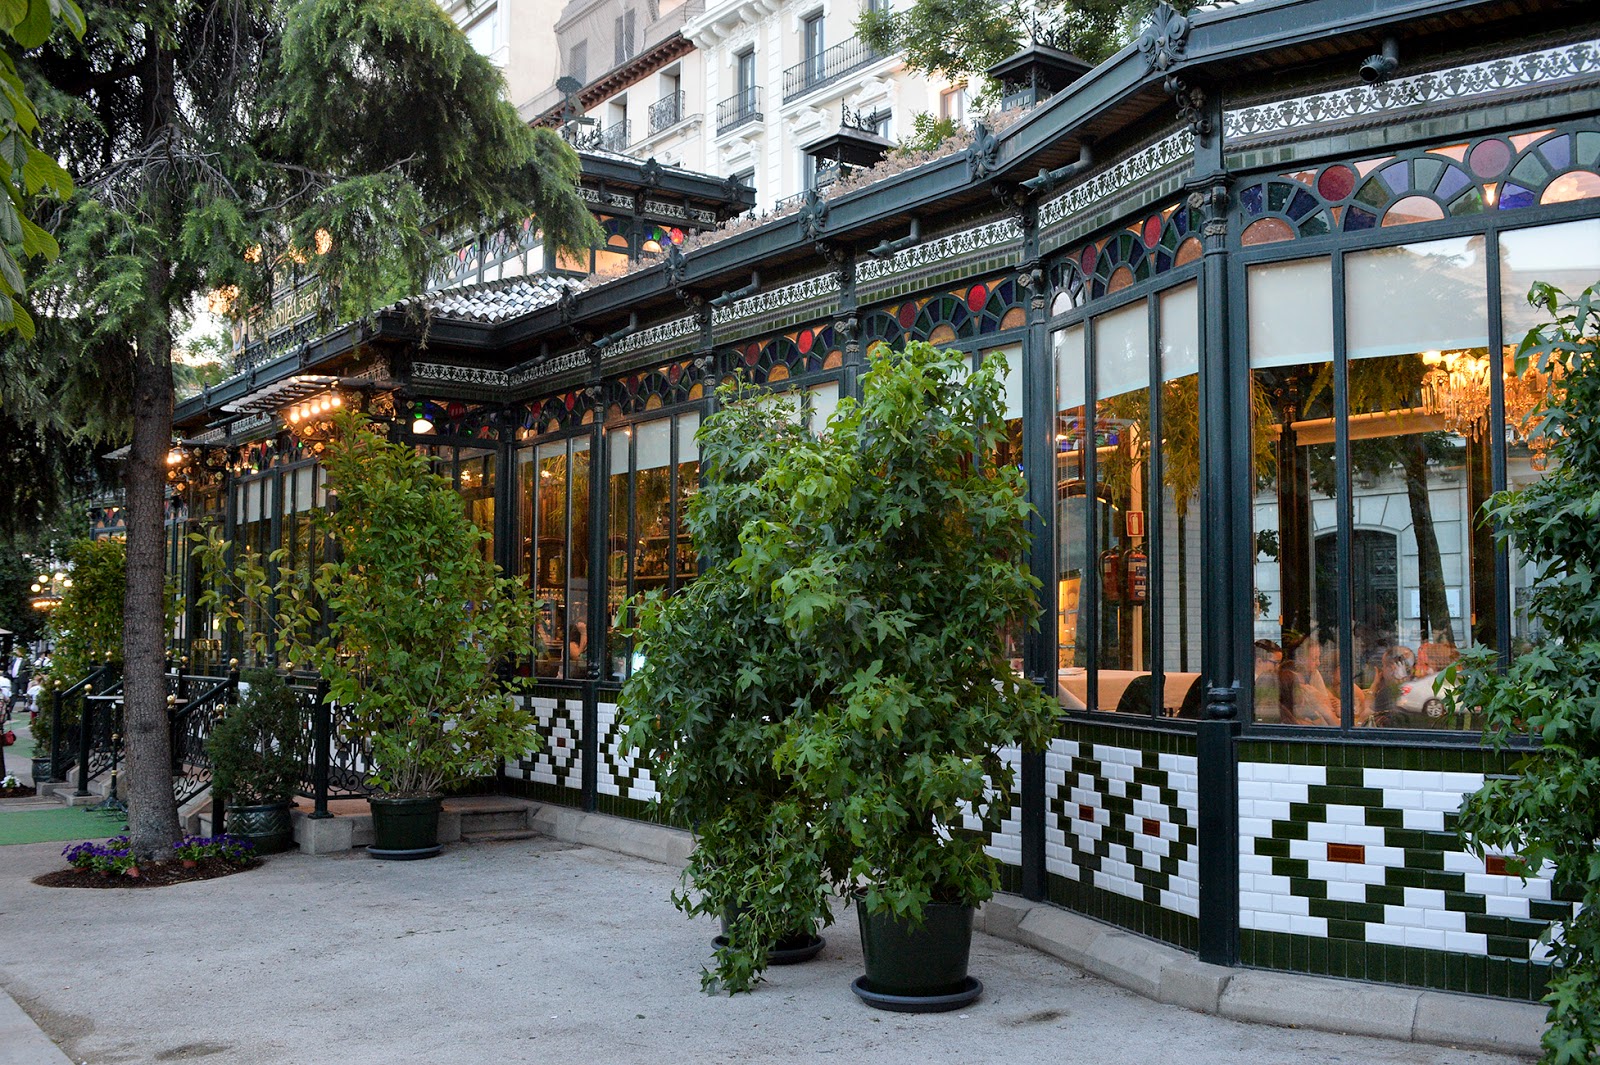 el pabellon del espejo recoletos madrid outdoor terraza cafe restaurante